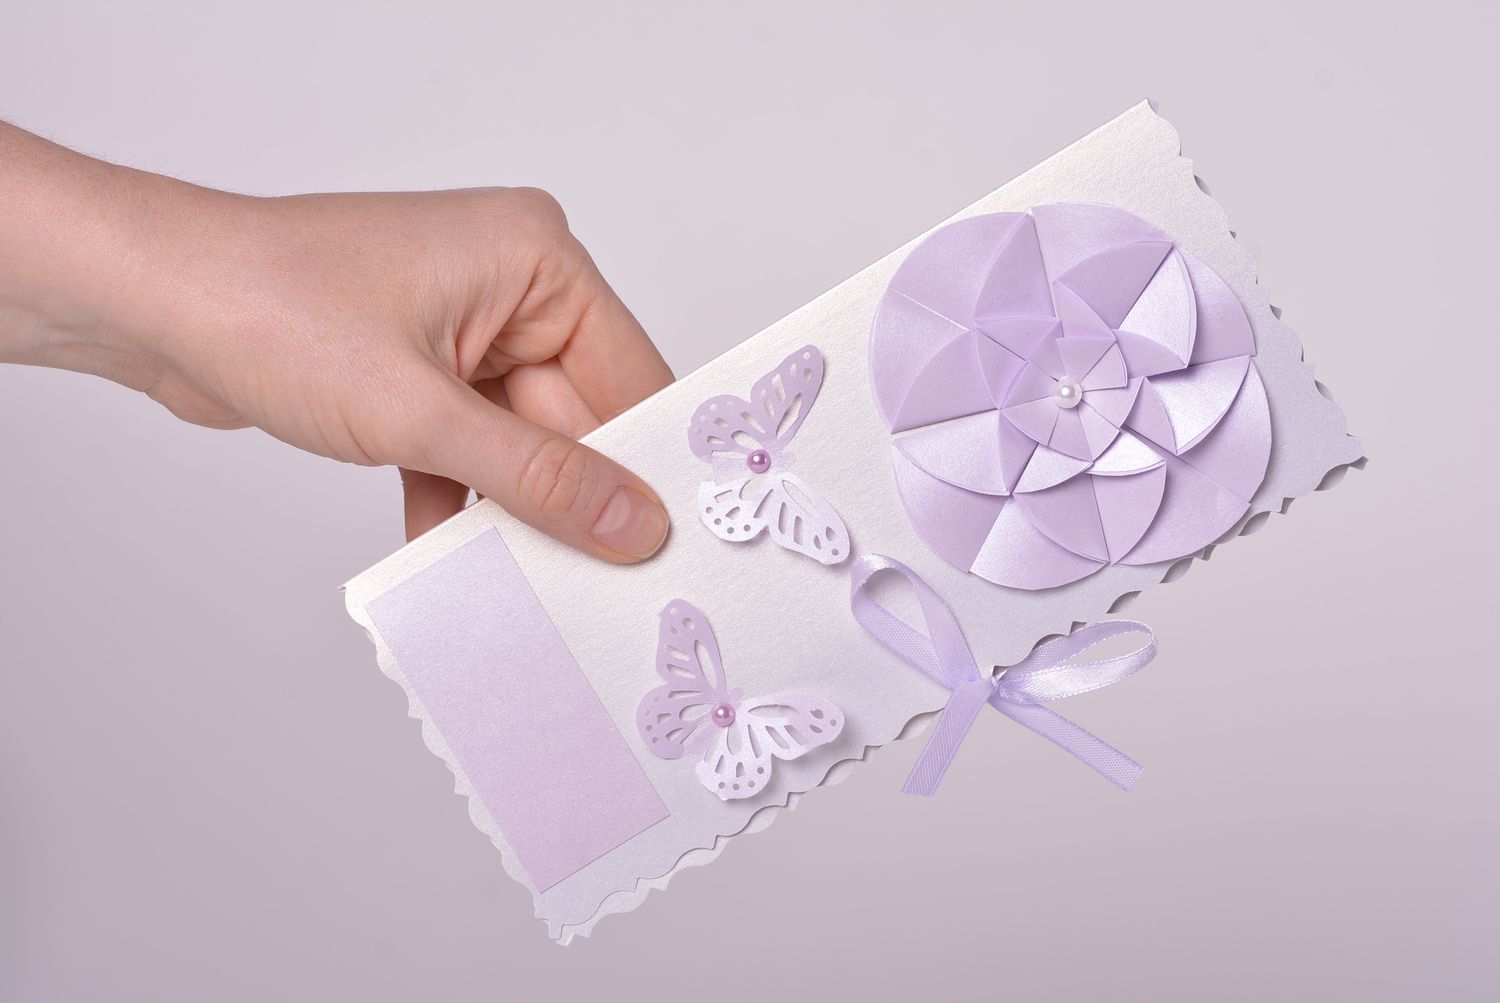 Handmade ausgefallenes Geschenk Scrapbooking Karte schöne Grußkarte violett foto 4